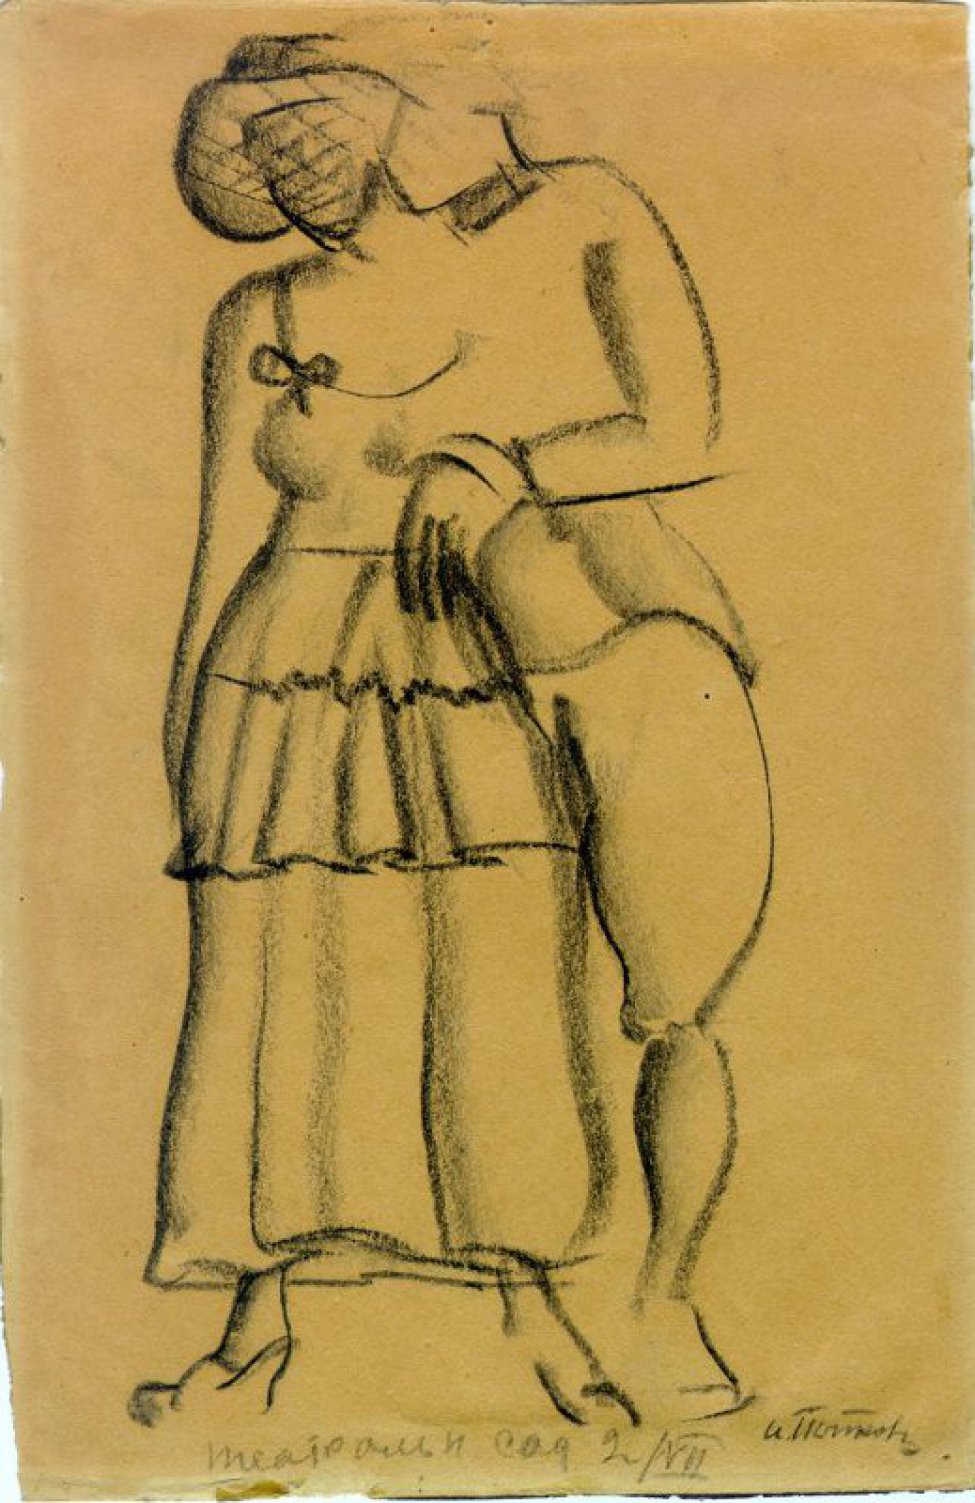 Изображены в рост мужчина и женщина стоящие в плотную друг другу. На женщине широкое платье с оборками, с открытыми плечами; на голове - большая шляпа с полями, с сеткой. Мужчина - в галифе.